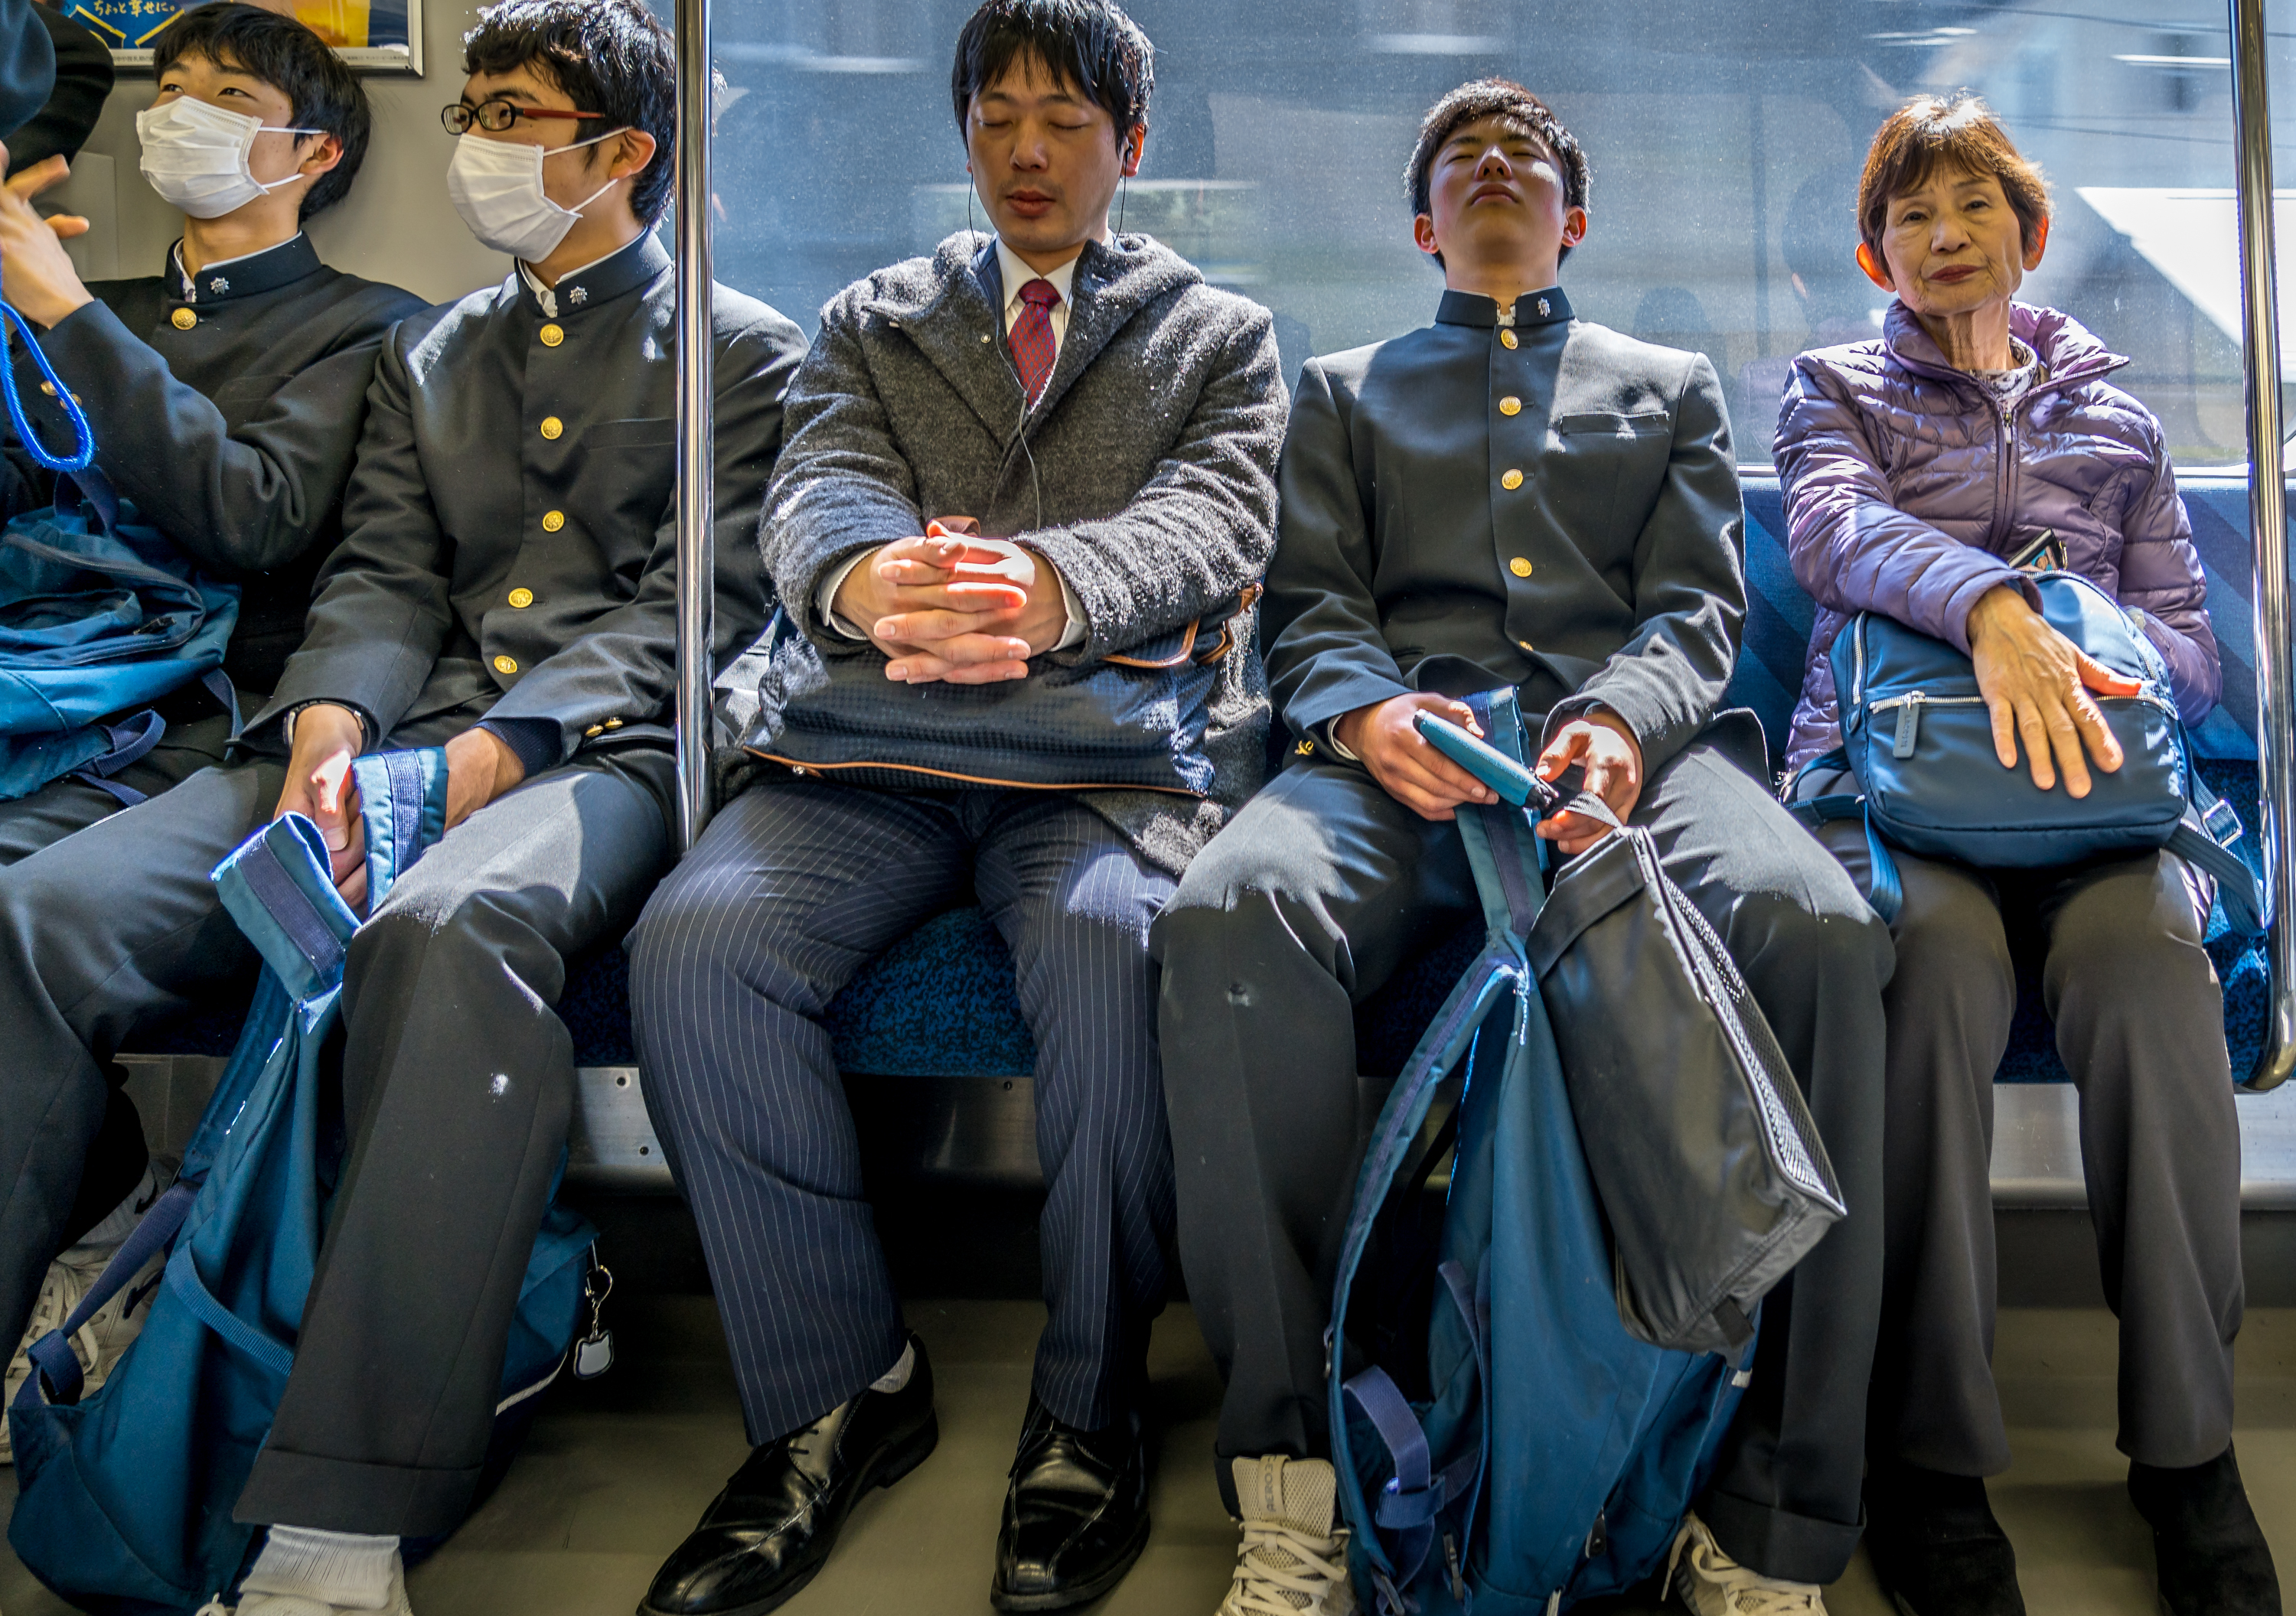 Почему не нужно верить текстам из серии "10 интересных фактов об Японии"